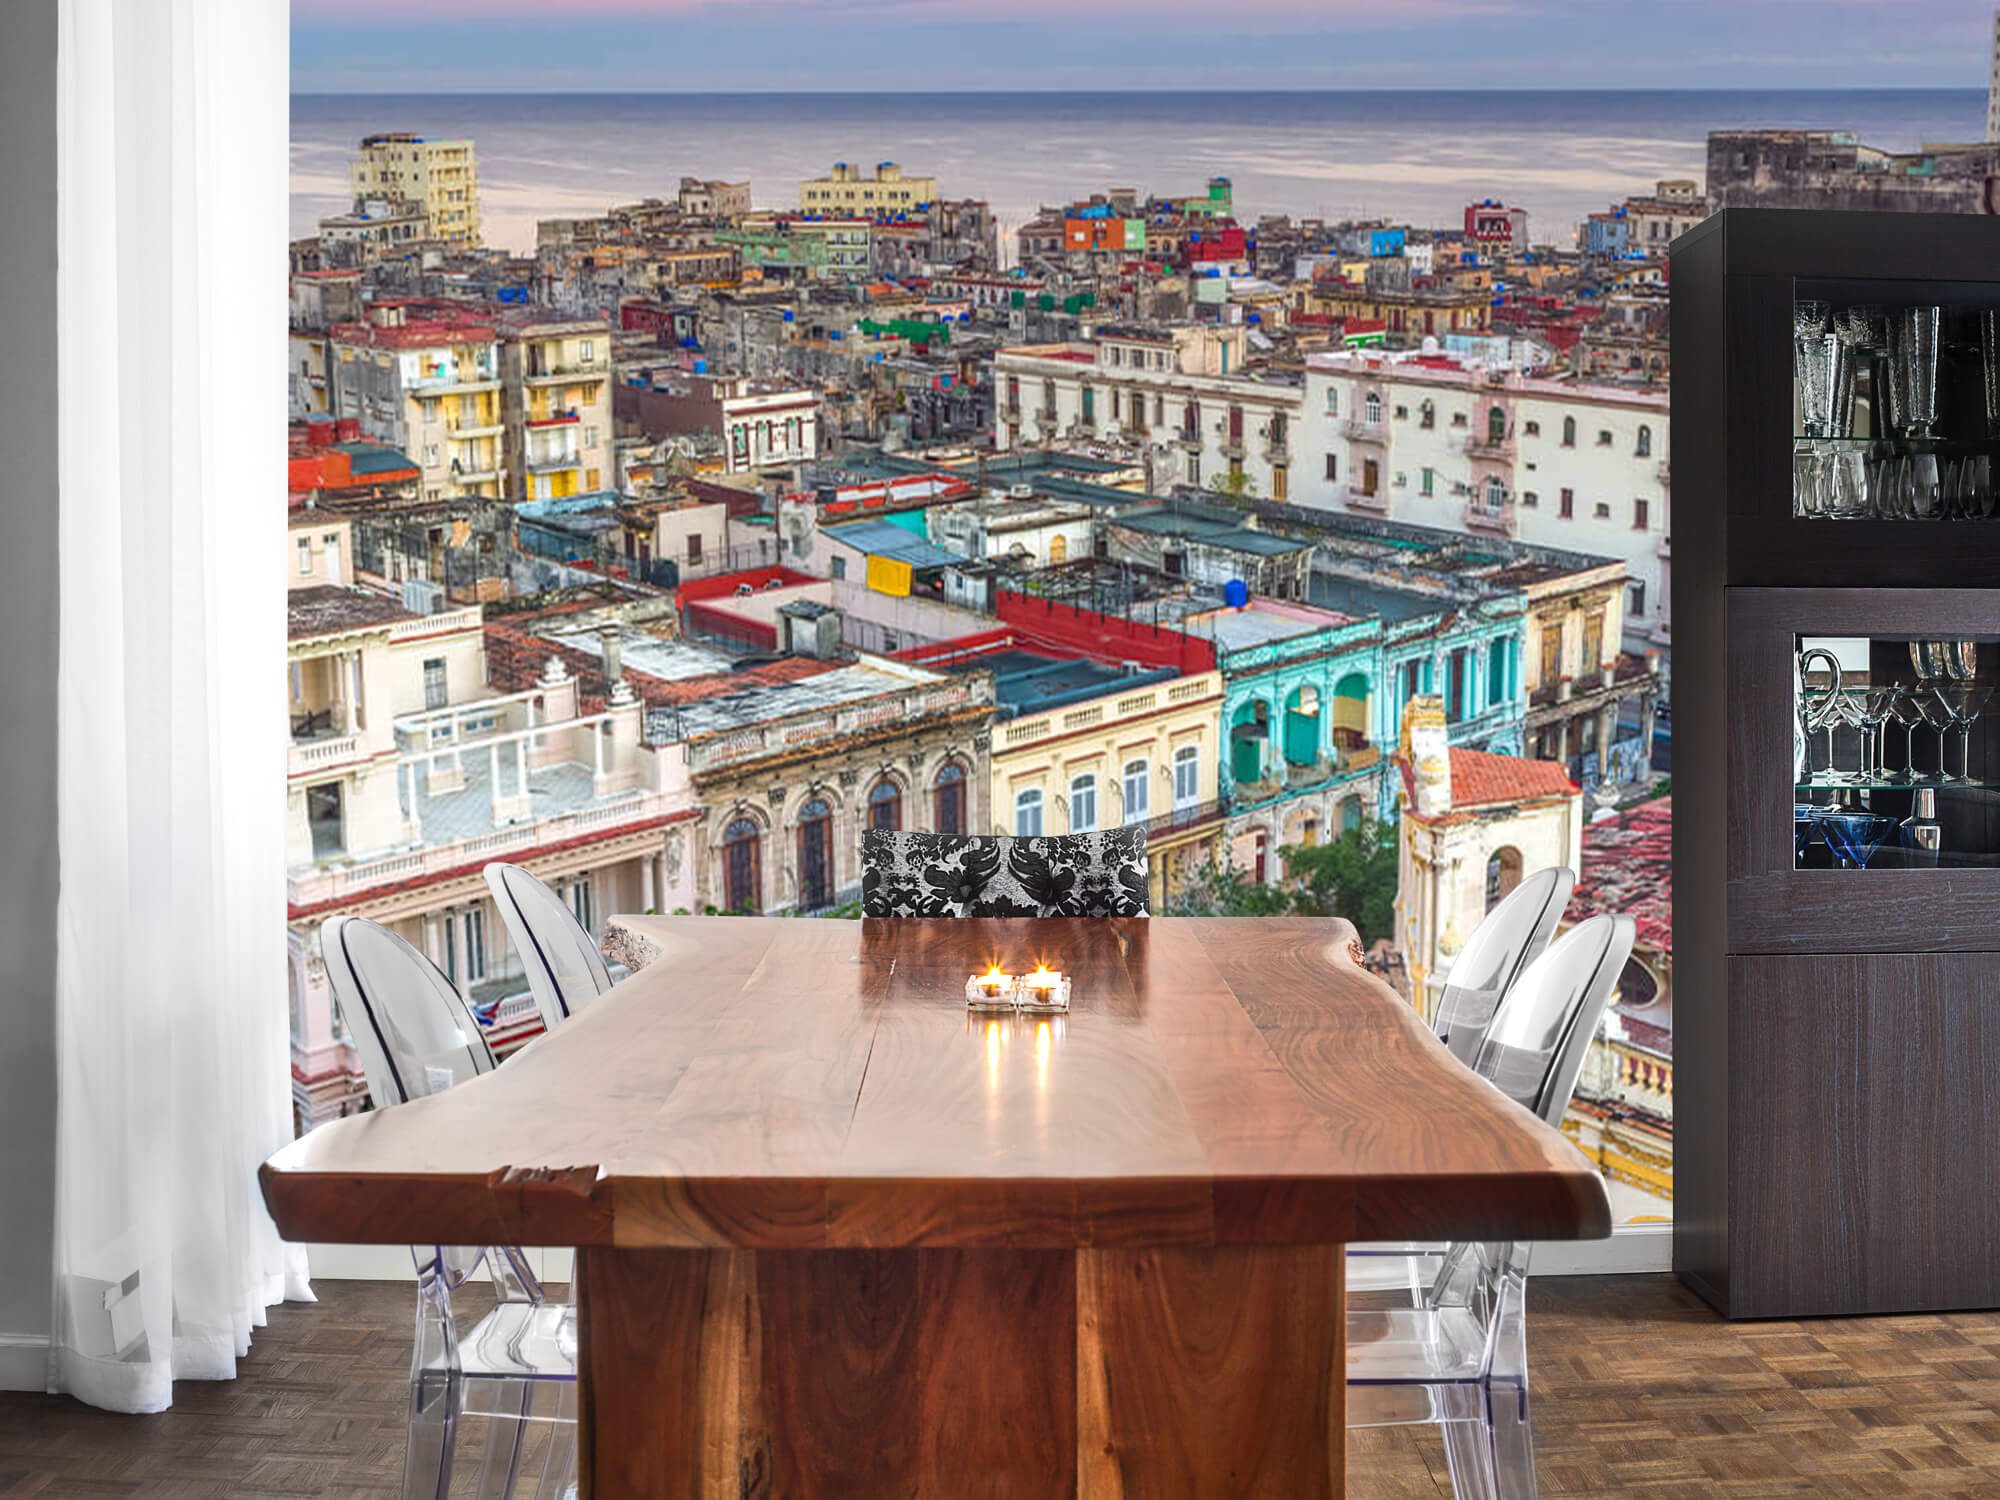  Papel pintado con La Habana desde arriba - Salón 4